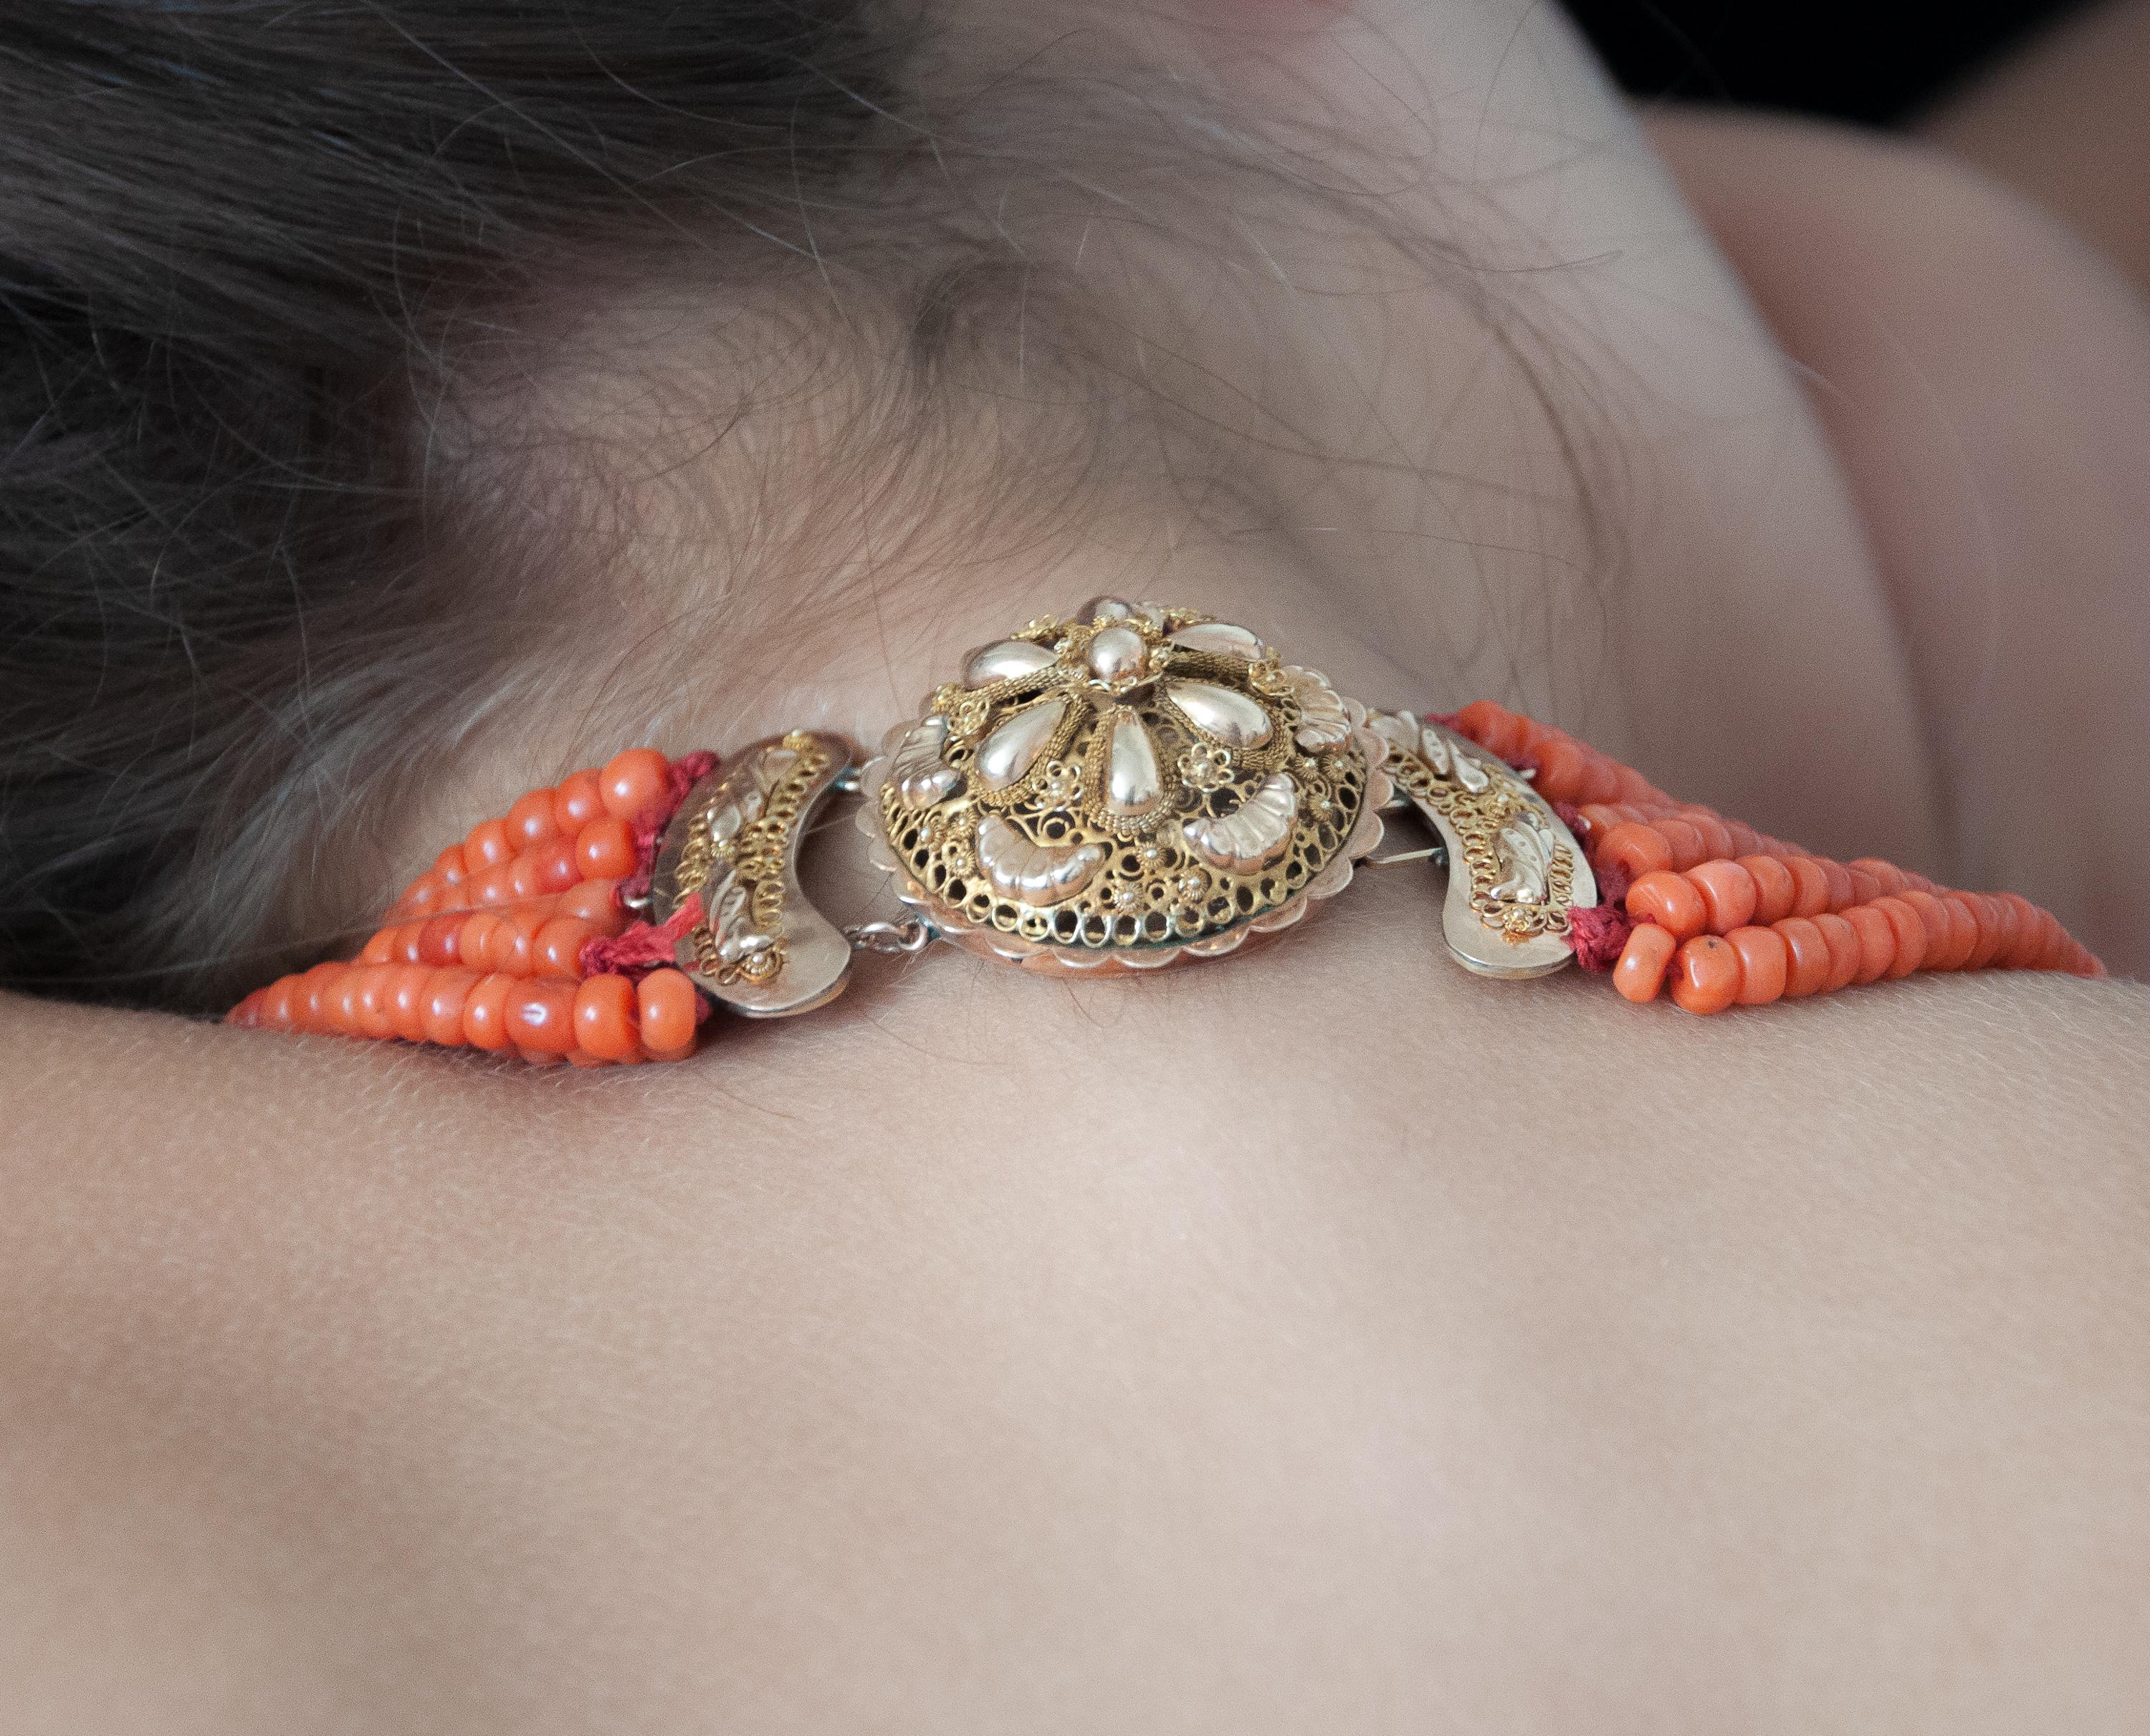 Il s'agit d'un collier ancien à sept brins de perles de cannetille en corail rouge. Les perles de corail sont en forme de tonneau et le fermoir rond est en or jaune 14 carats. Le fermoir est absolument magnifique ! Magnifiquement orné de filigrane